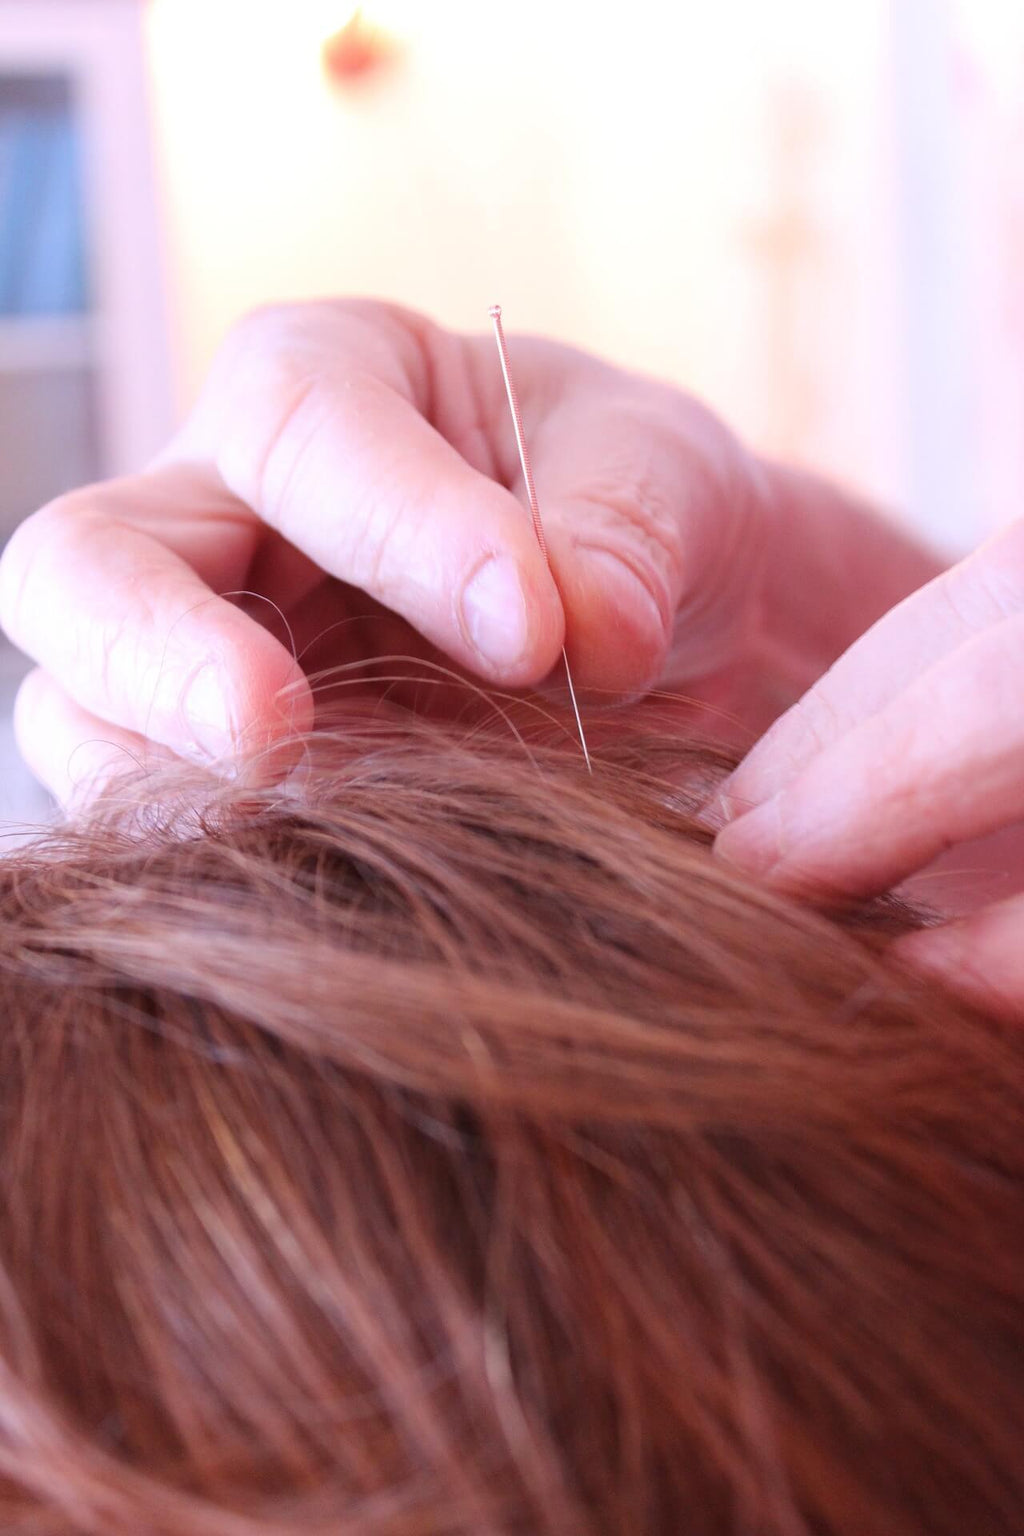 Micro-rouleau pour cheveux, favorise la santé des cheveux, soins pour la  repousse, microniddle, mésothérapie, traitements